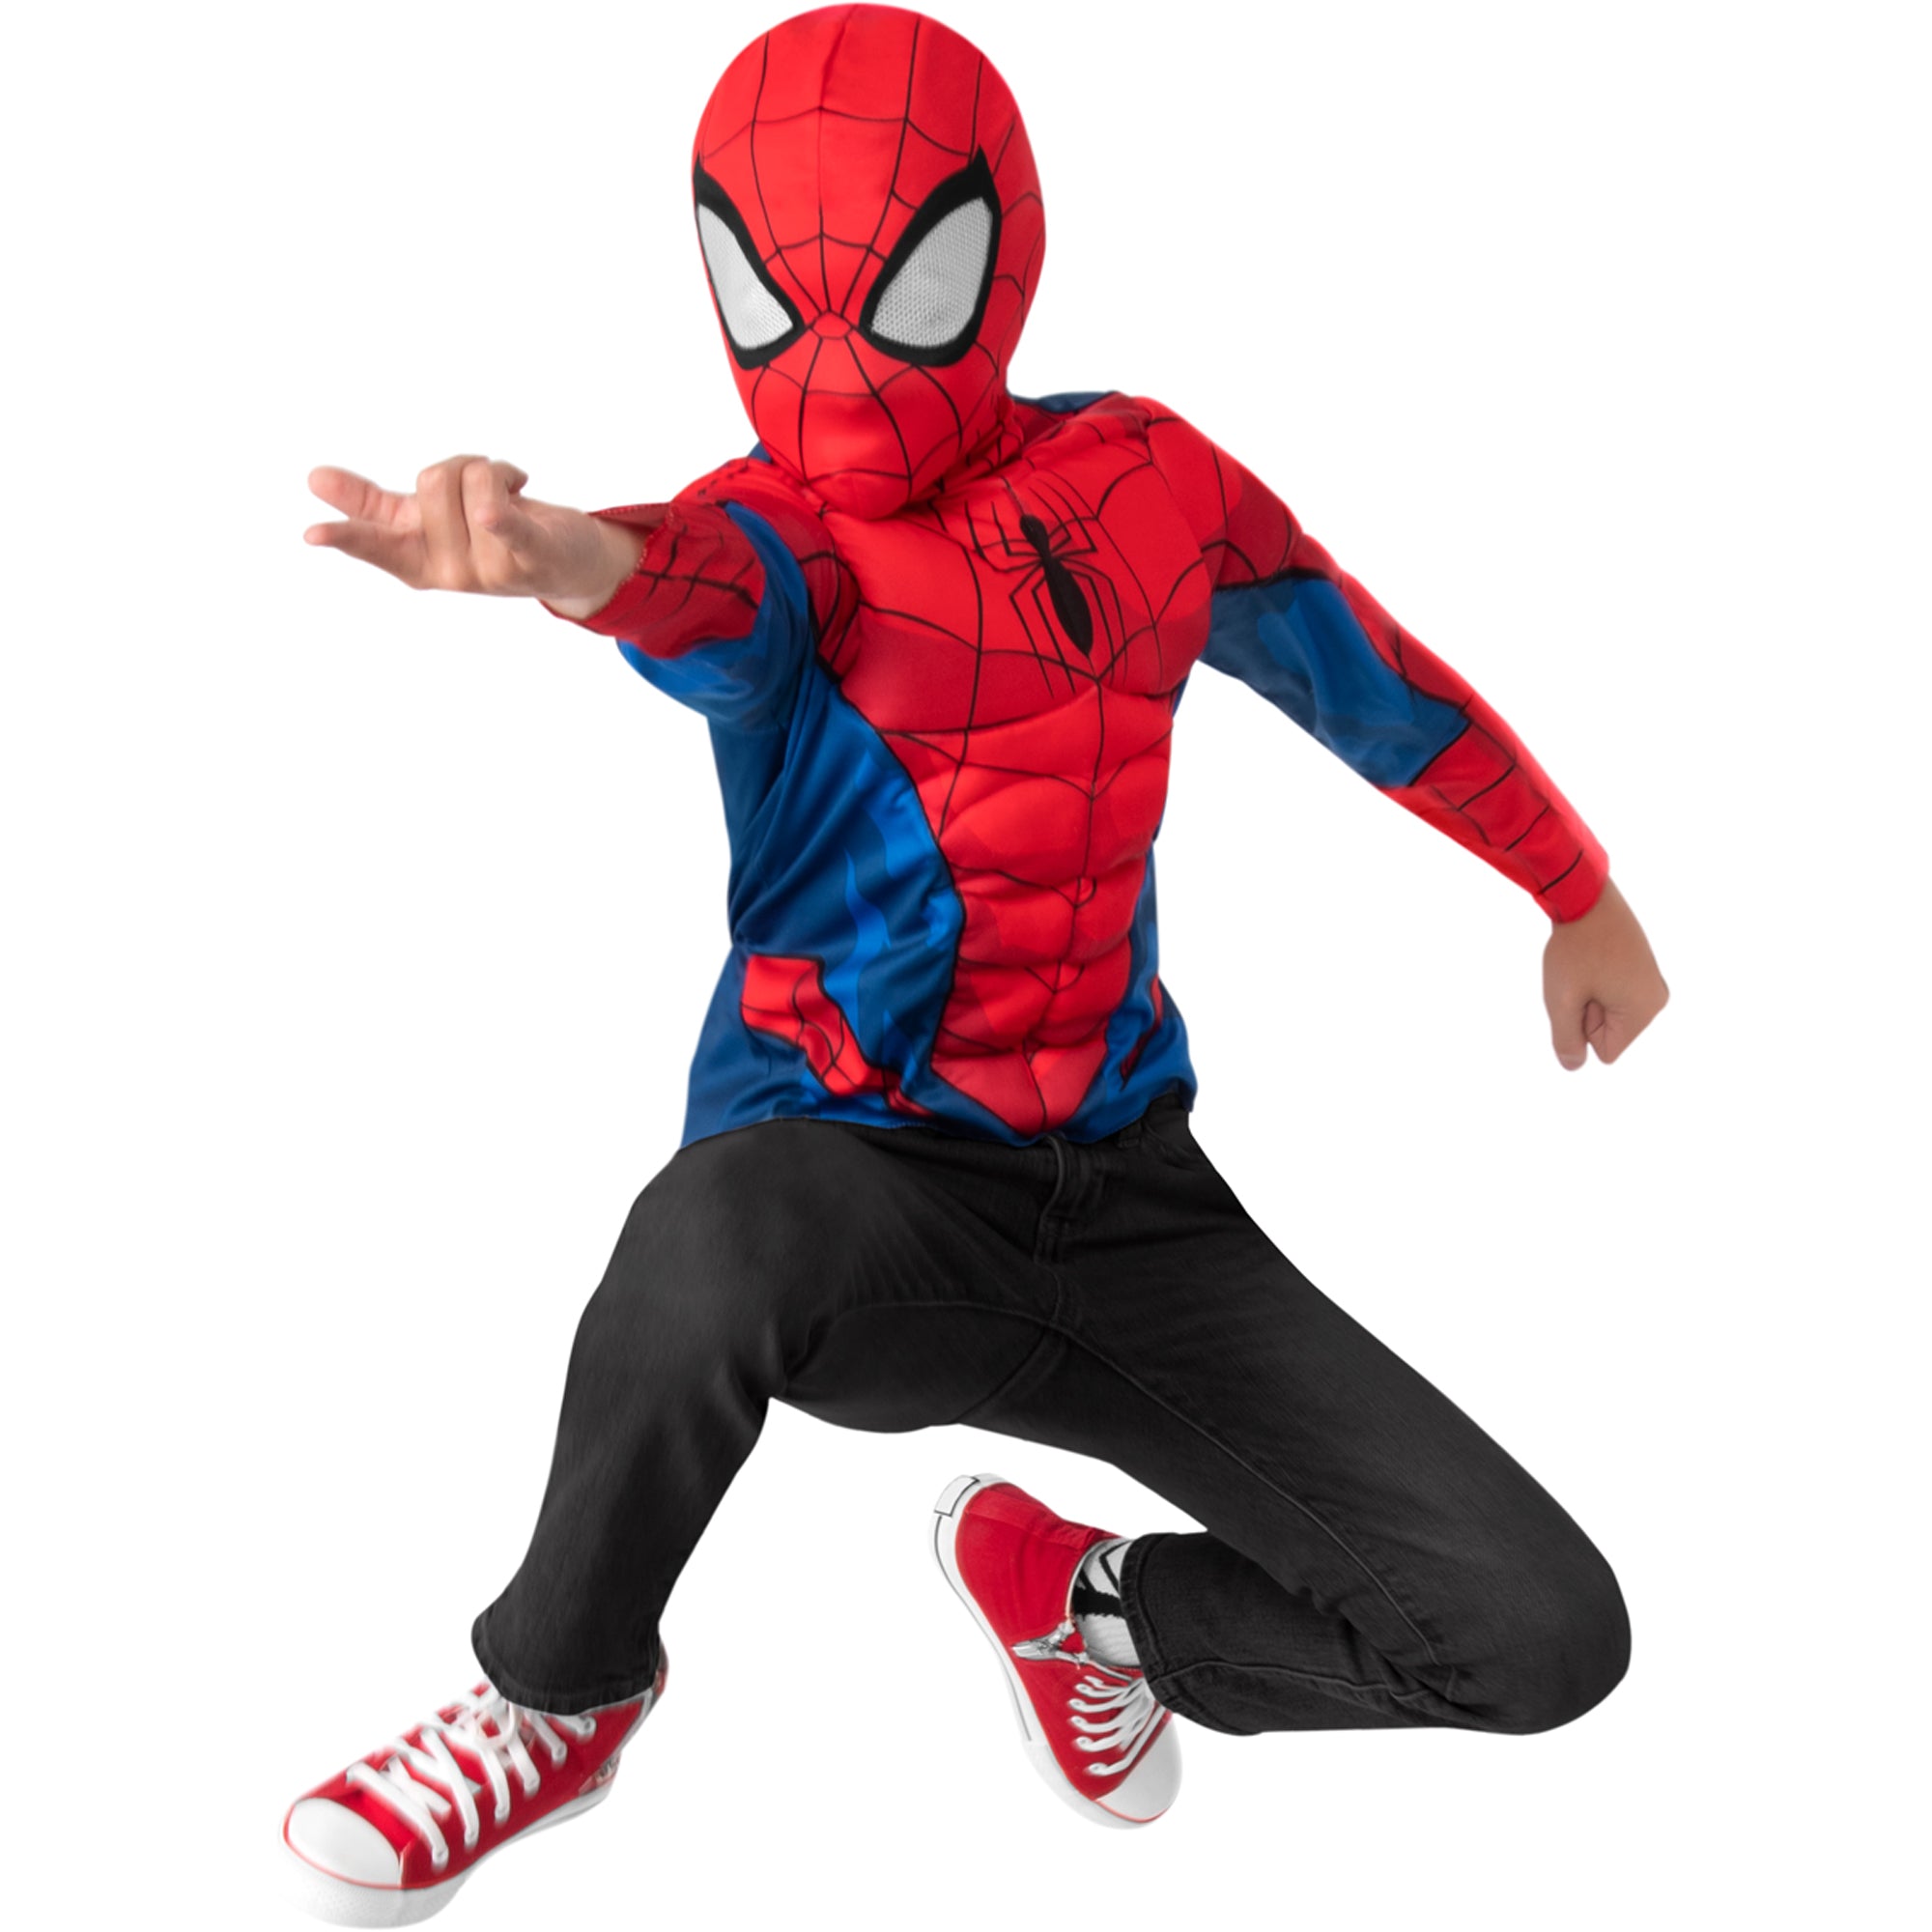 Marvel Spider-Man Deluxe Costume for Kids